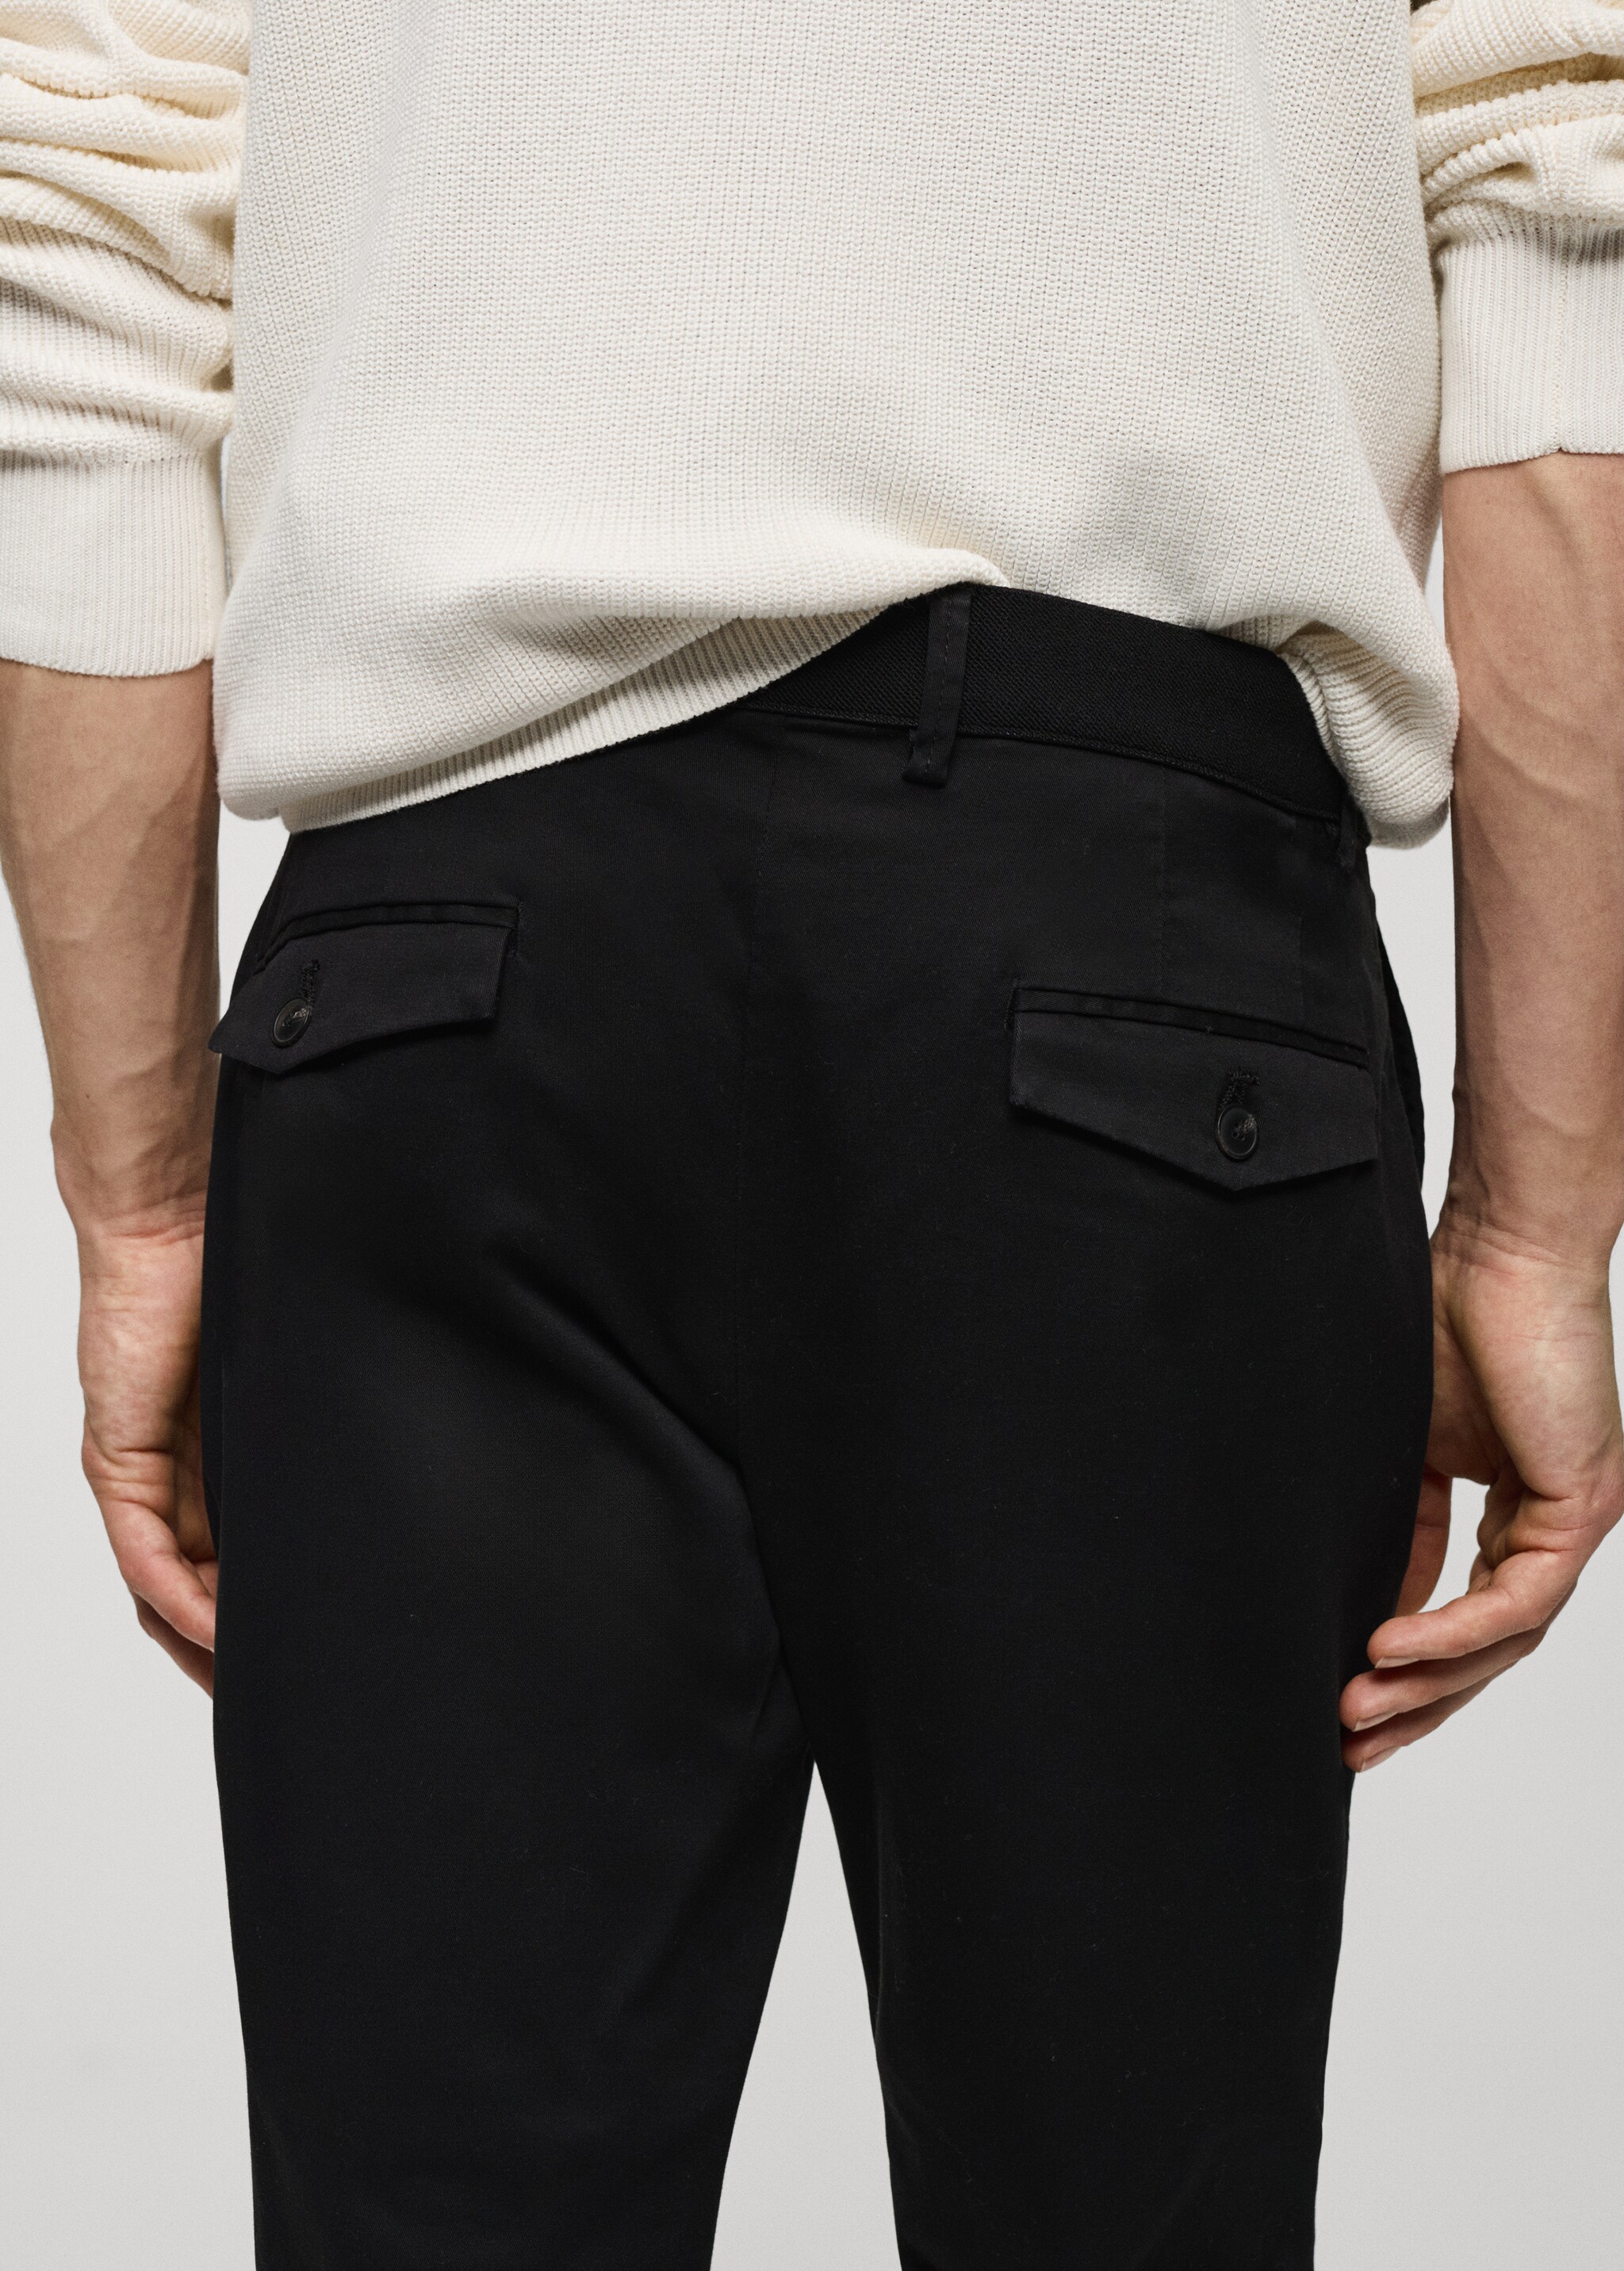 Pantalon coton tapered crop - Détail de l'article 4